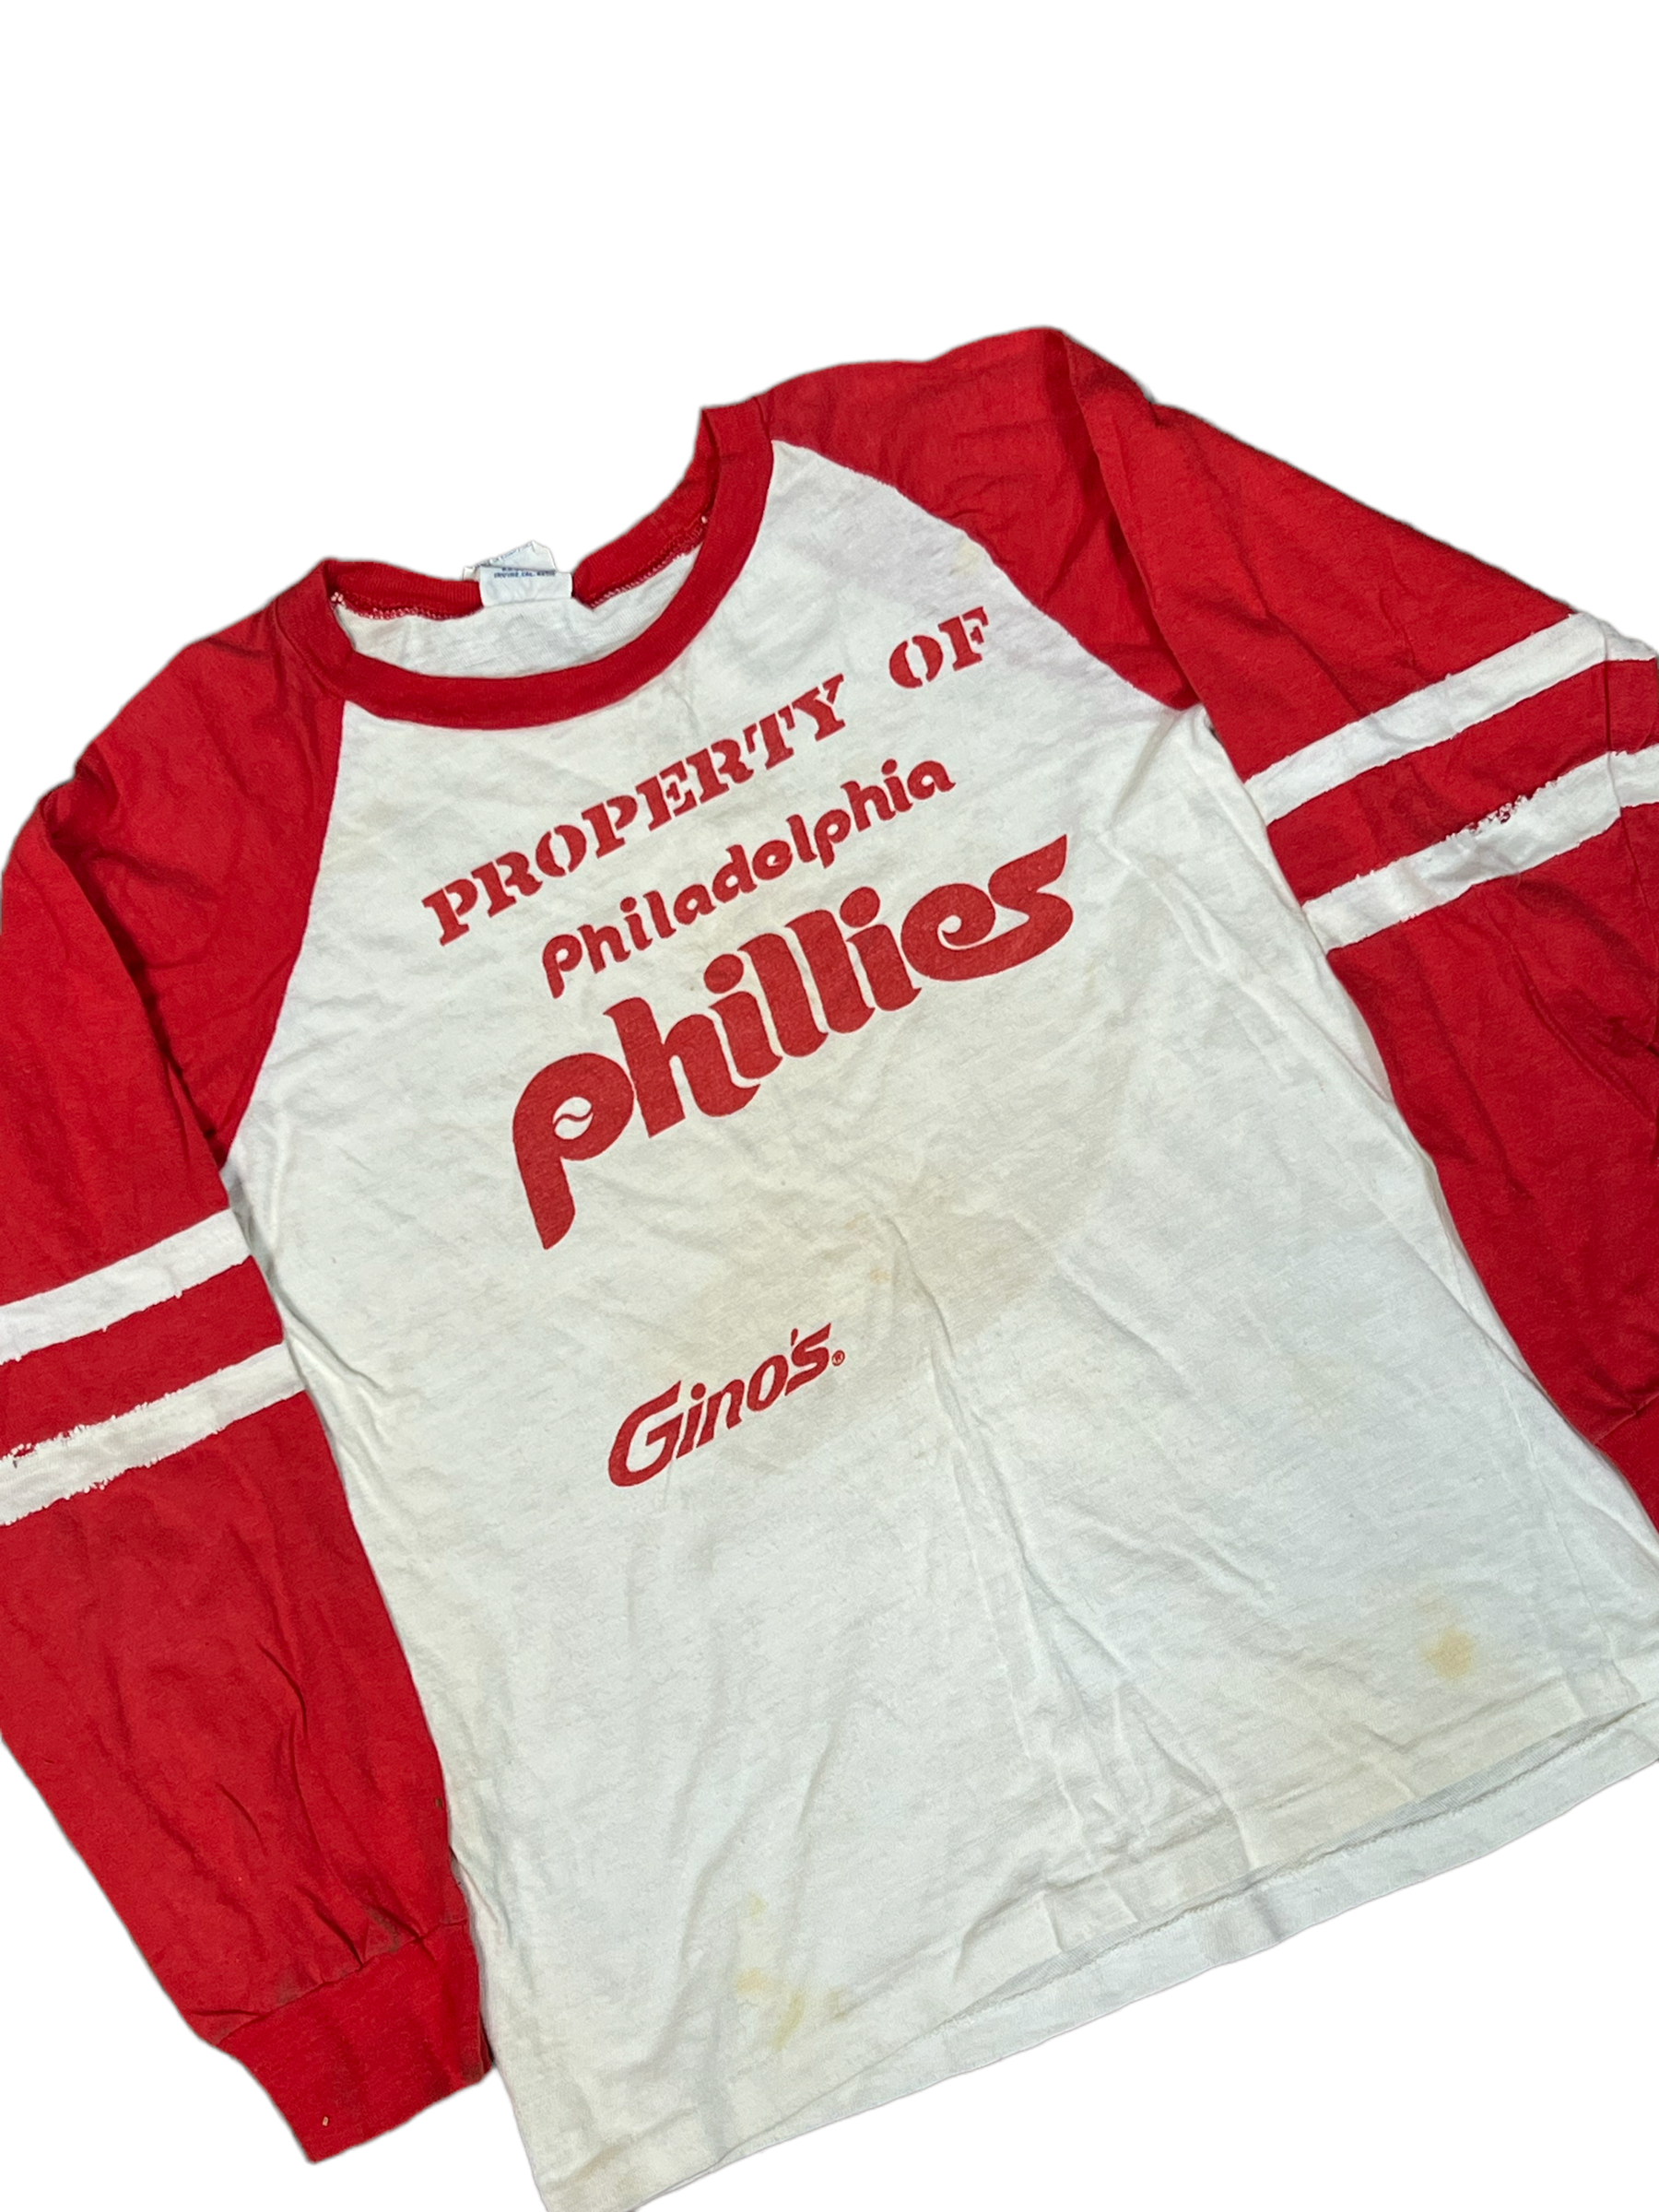 Philadelphia Phillies Unisex Adult MLB Jerseys for sale